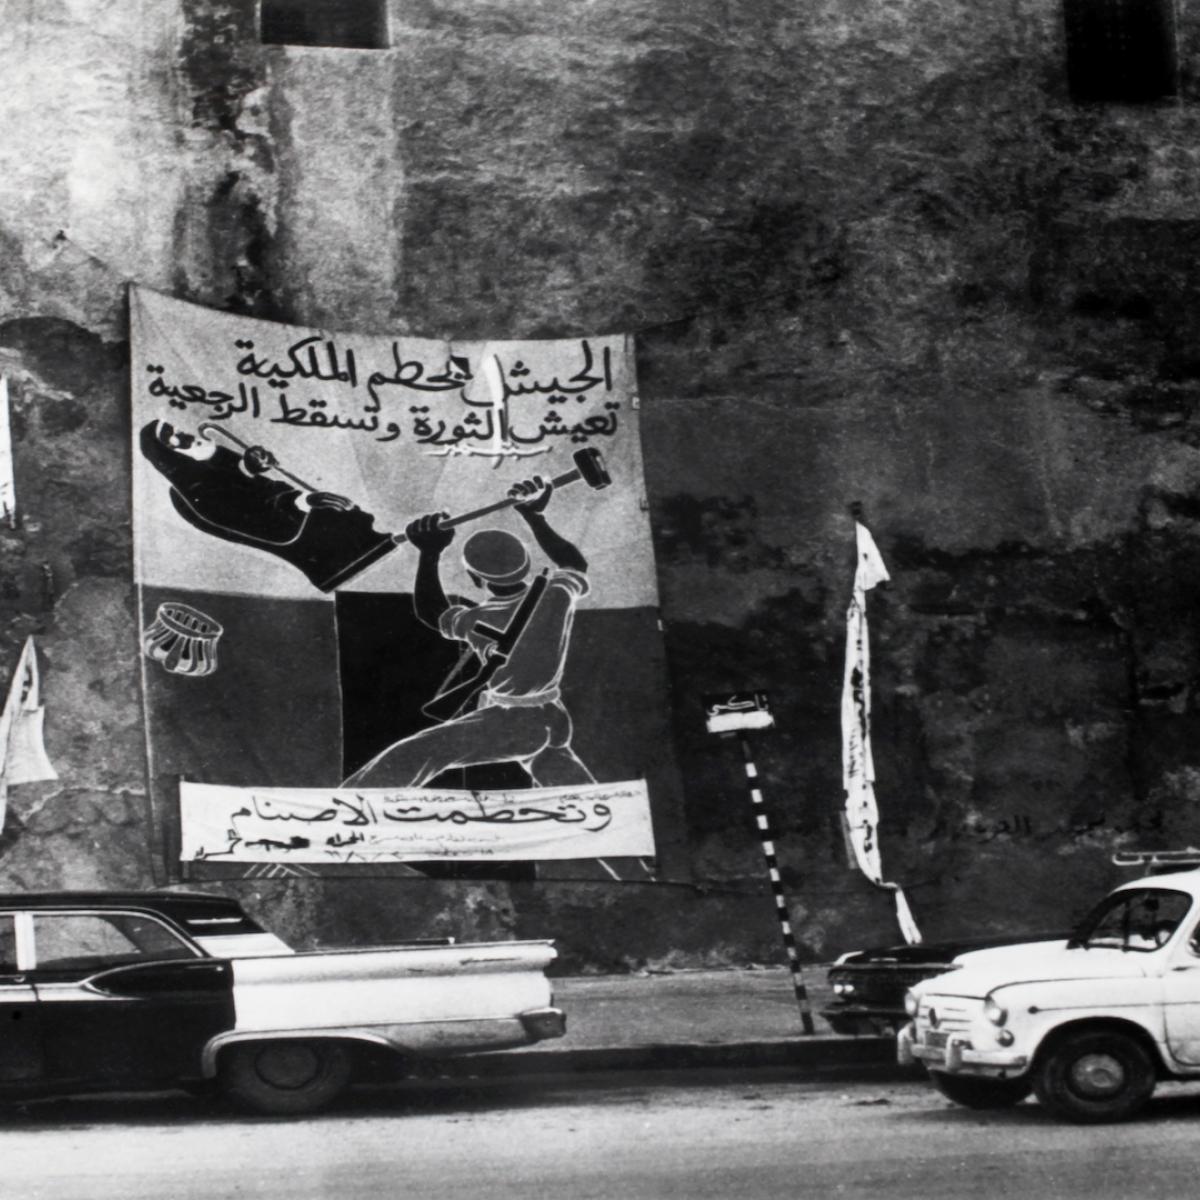 ملصقات ثورية في ليبيا في 17 ديسمبر 1969(Getty)